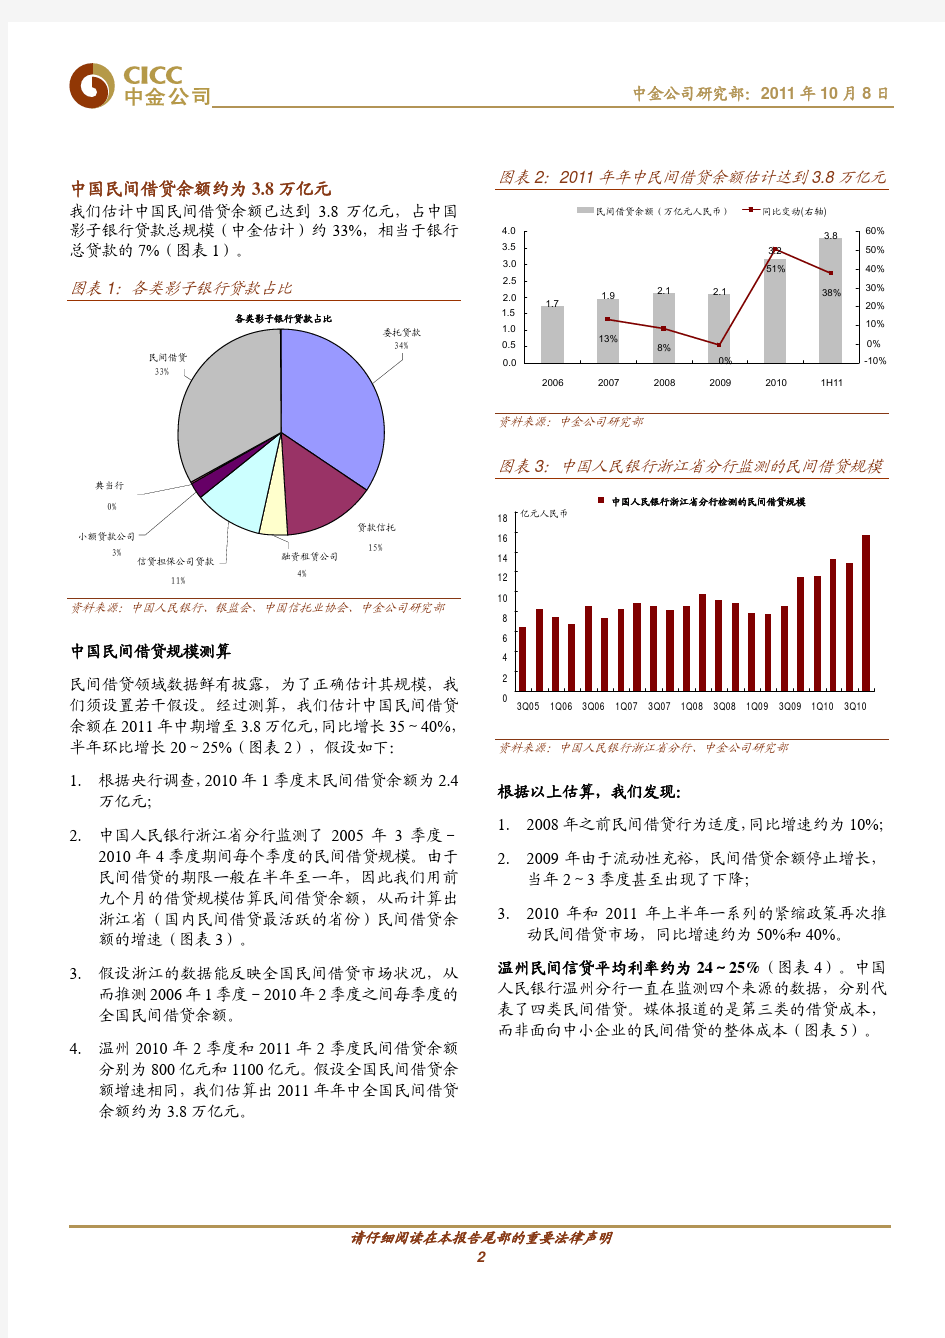 中国民间借贷分析--中金公司